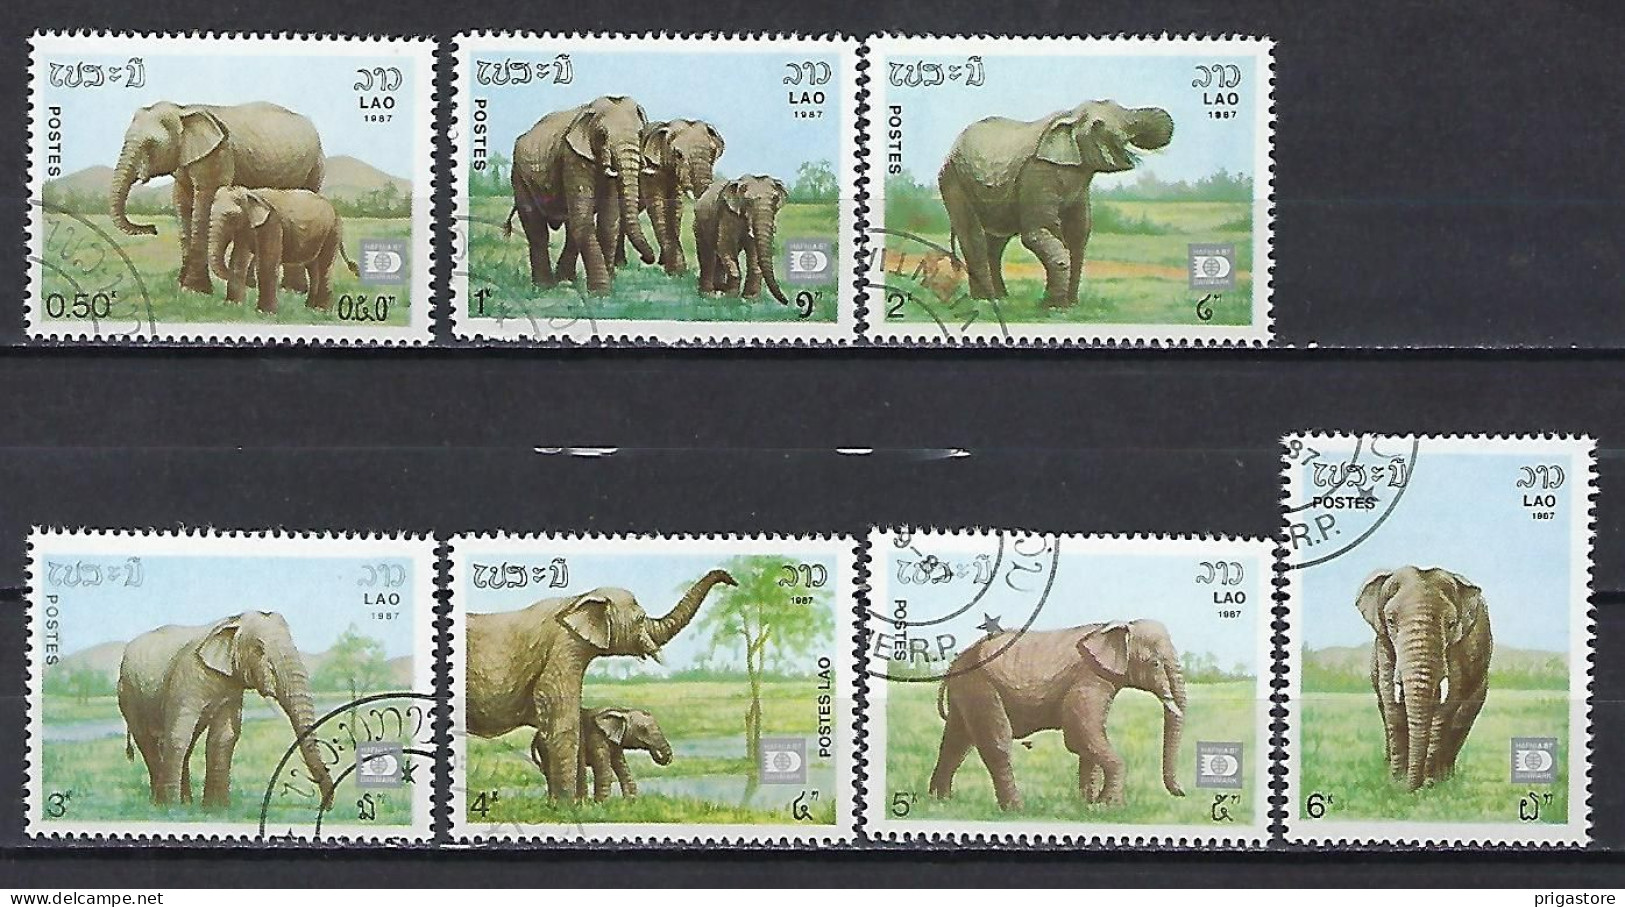 Eléphants Laos 1987 (605) Yvert 791 à 797 Oblitérés Used - Elefanten